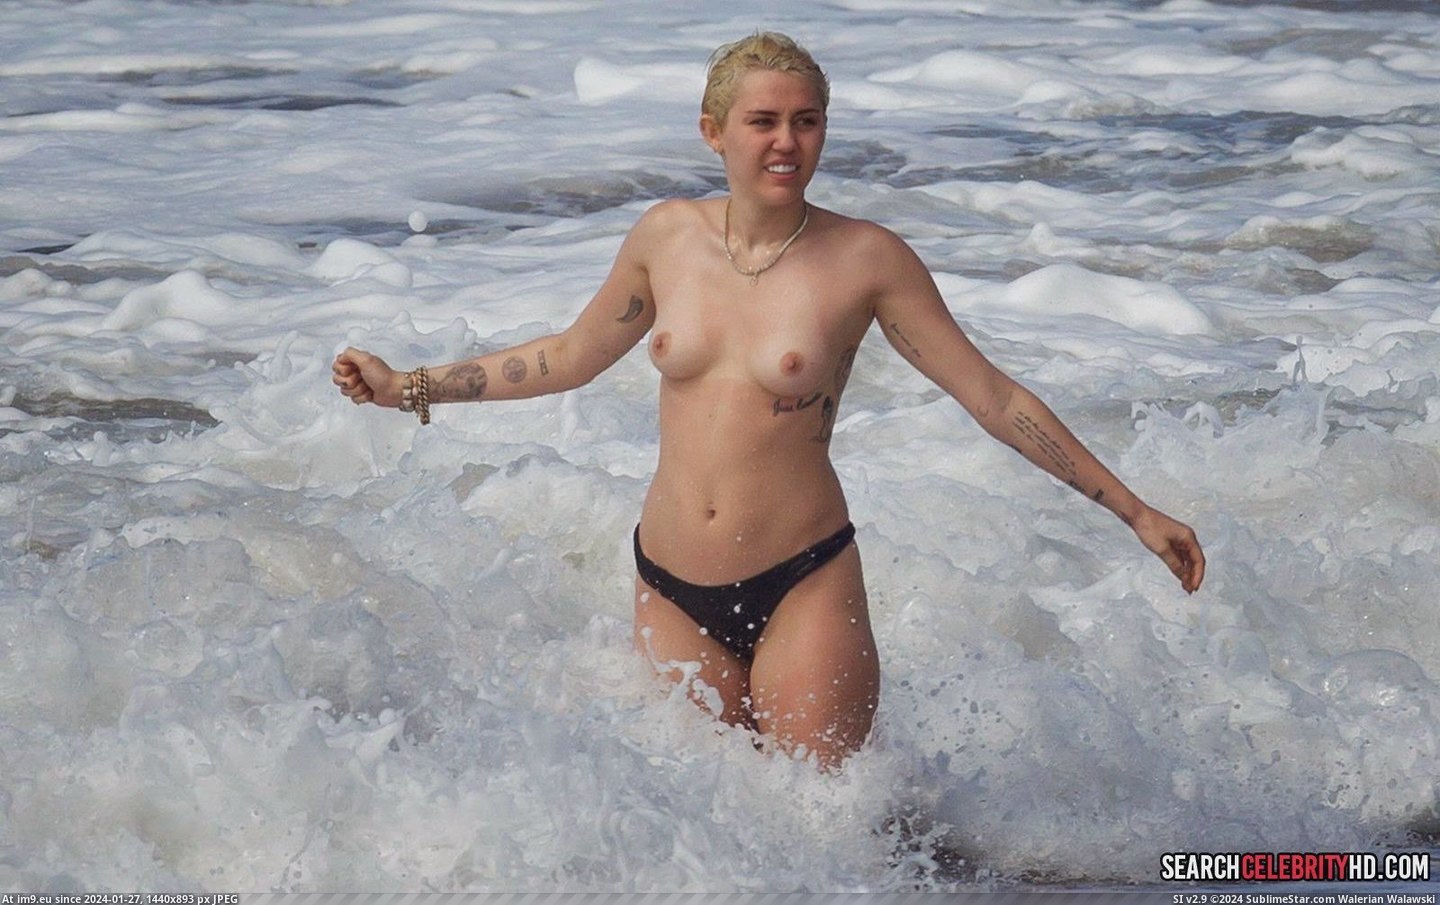 Miley Cyrus Topless Bikini Candid Photos In Hawaii (21) (in Miley Cyrus Topless Bikini Candid Photos In Hawaii)